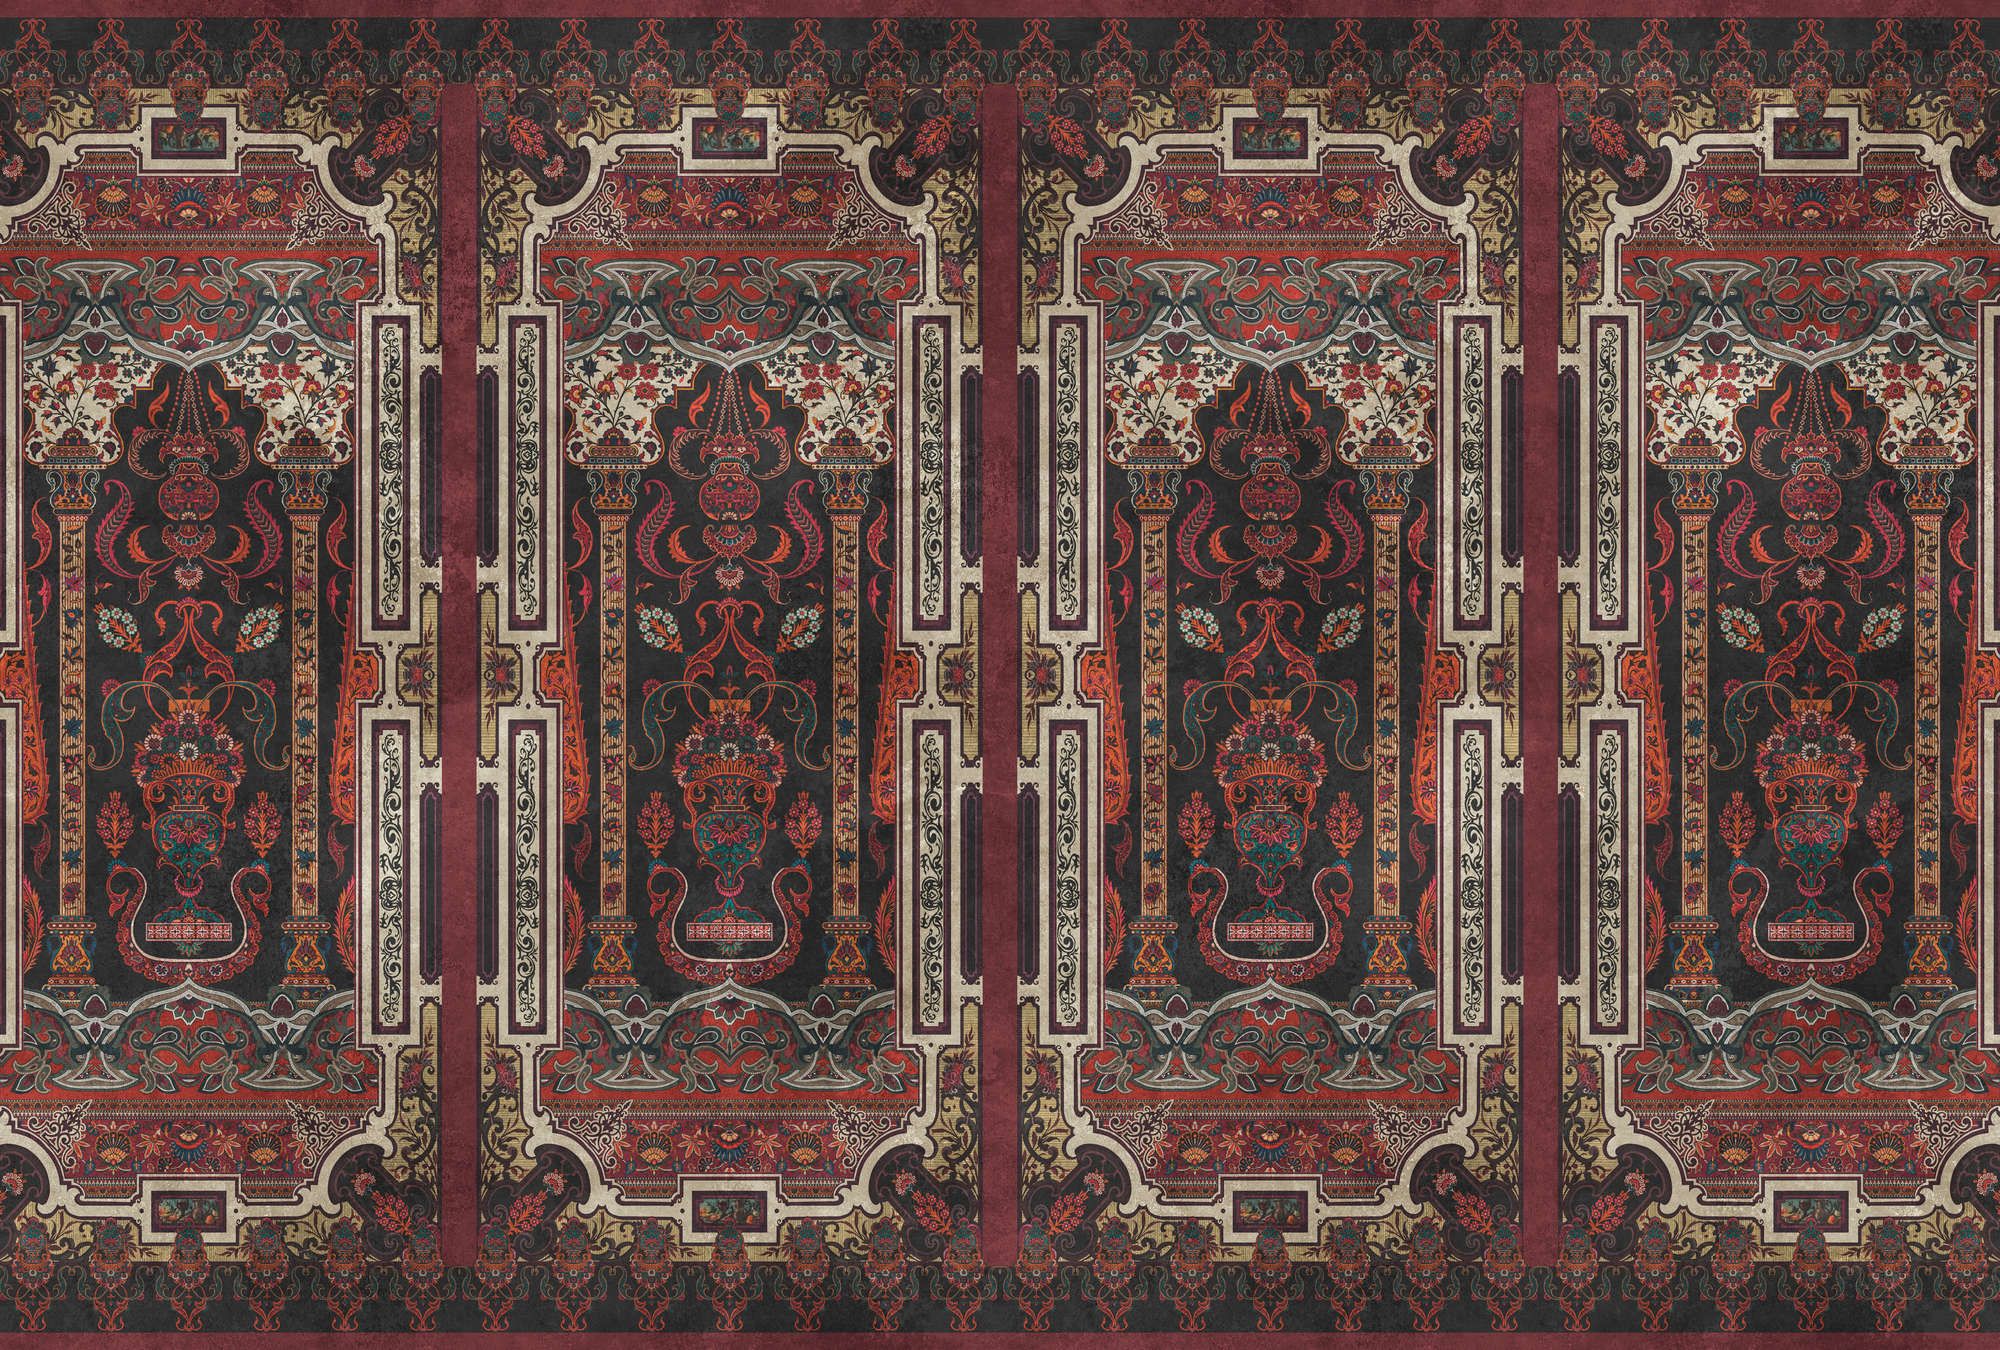             papier peint en papier panoramique »karim« - lambris ornemental avec structure de plâtre vintage - rouge foncé | Intissé lisse, légèrement nacré
        